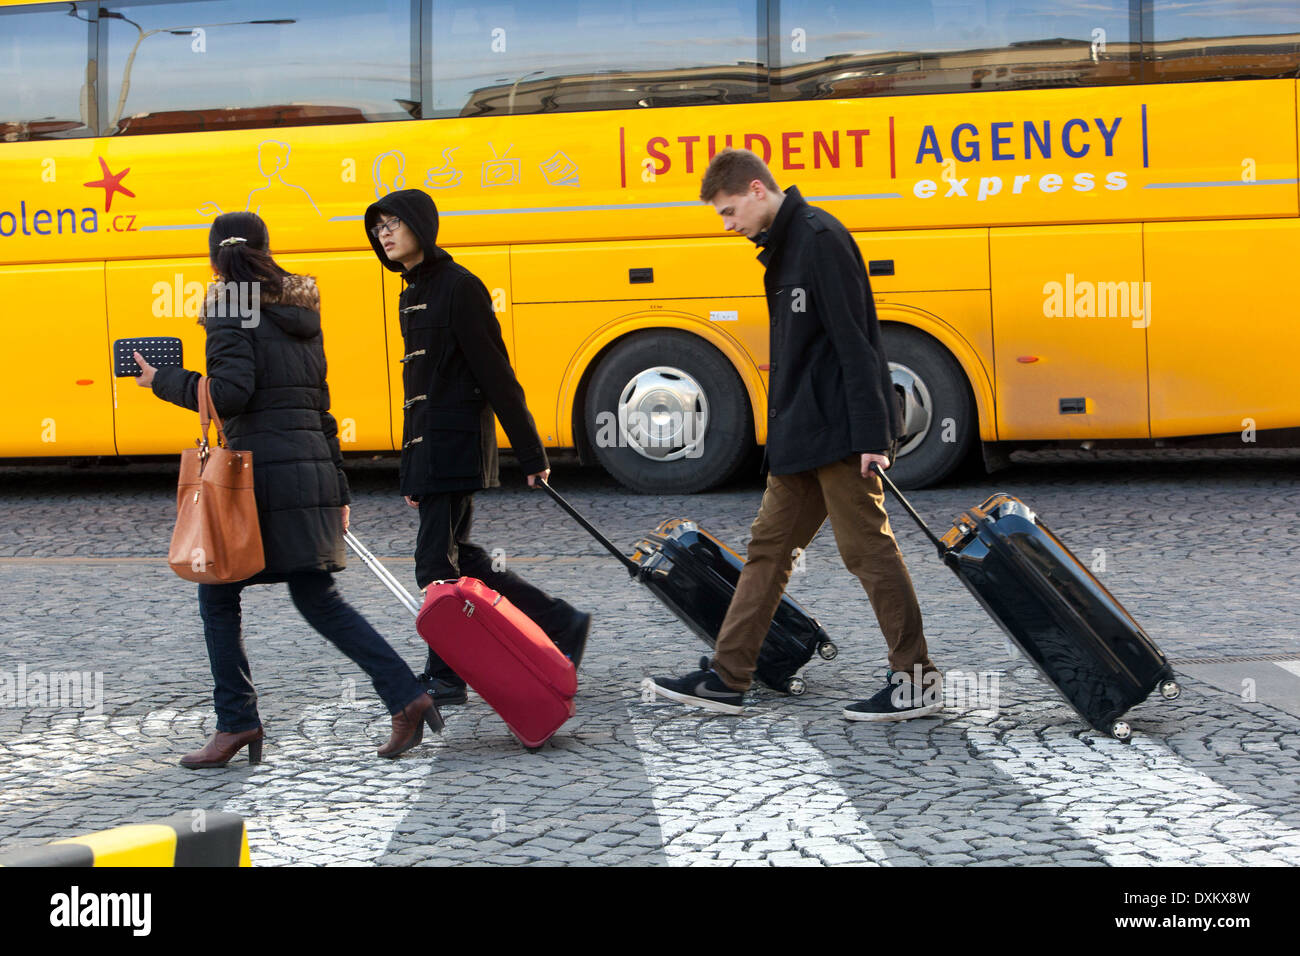 Prager Busbahnhof Prag Florenc Menschen, die mit Gepäck reisen Stockfoto